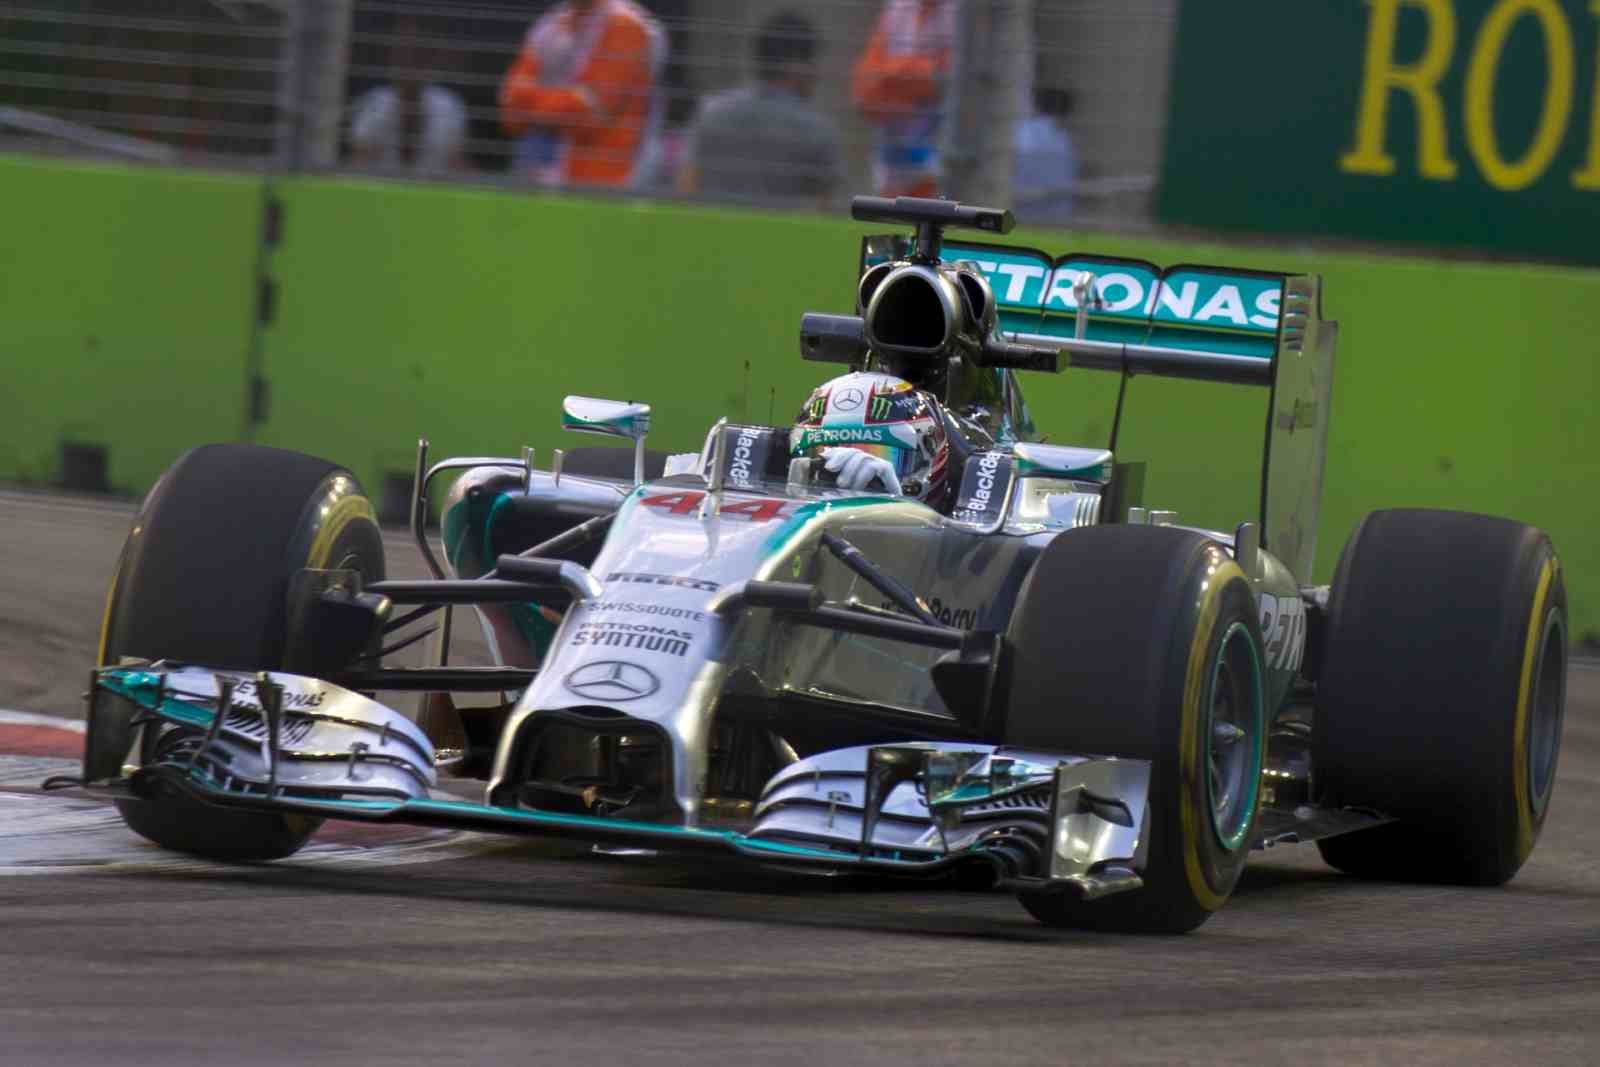 Após mudança de regulamento, a Mercedes disparou. Título de Lewis Hamilton em 2014